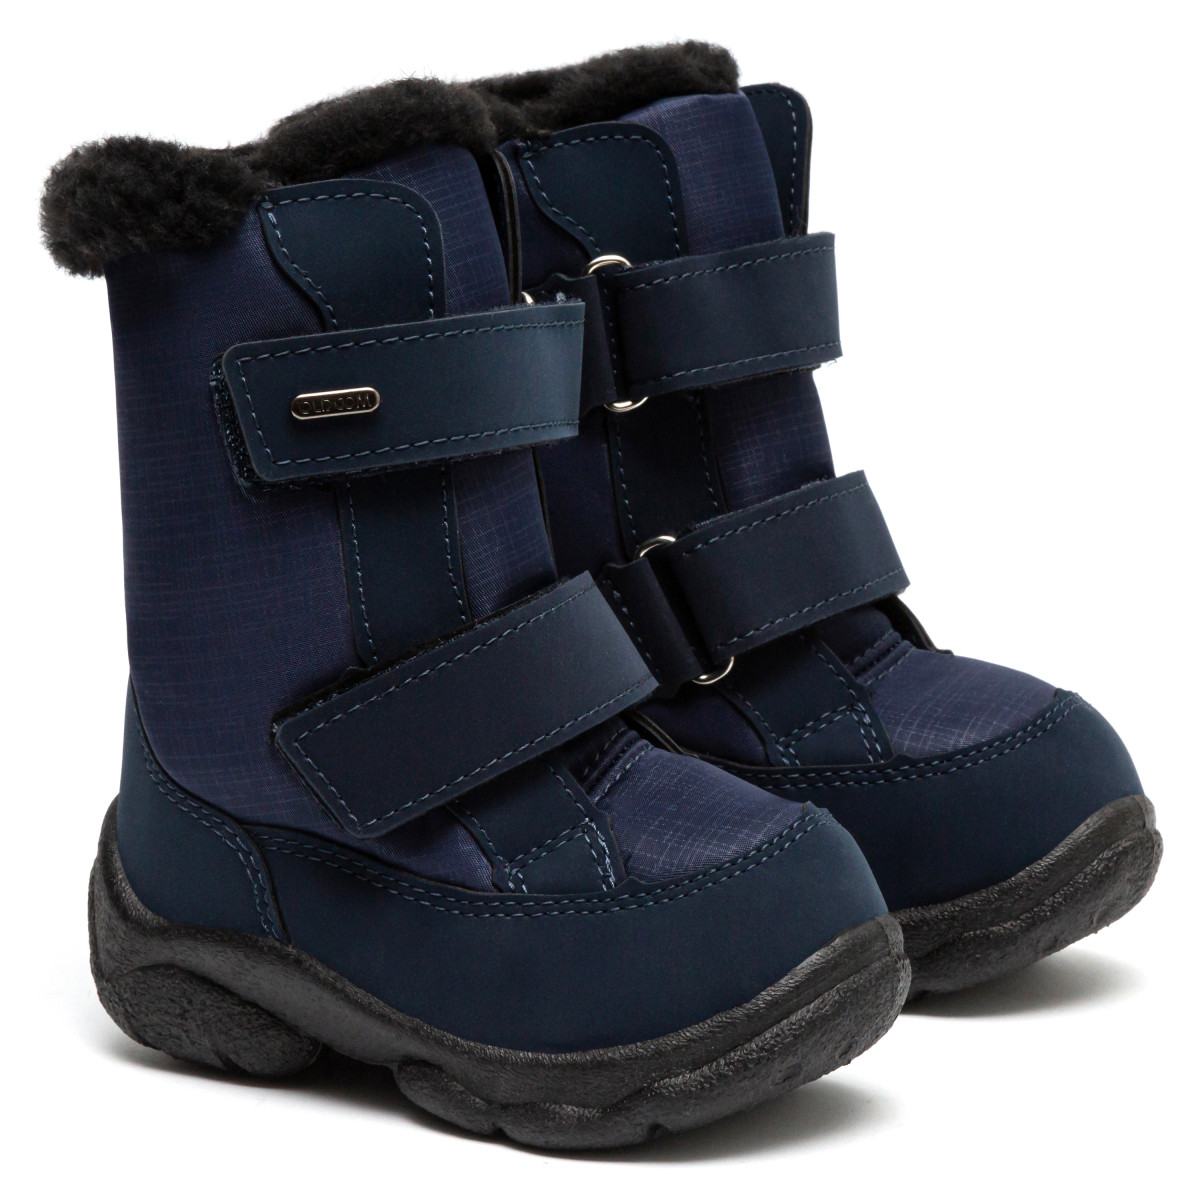 Cumpara online cizme de iarna copii ALASKA, Navy -